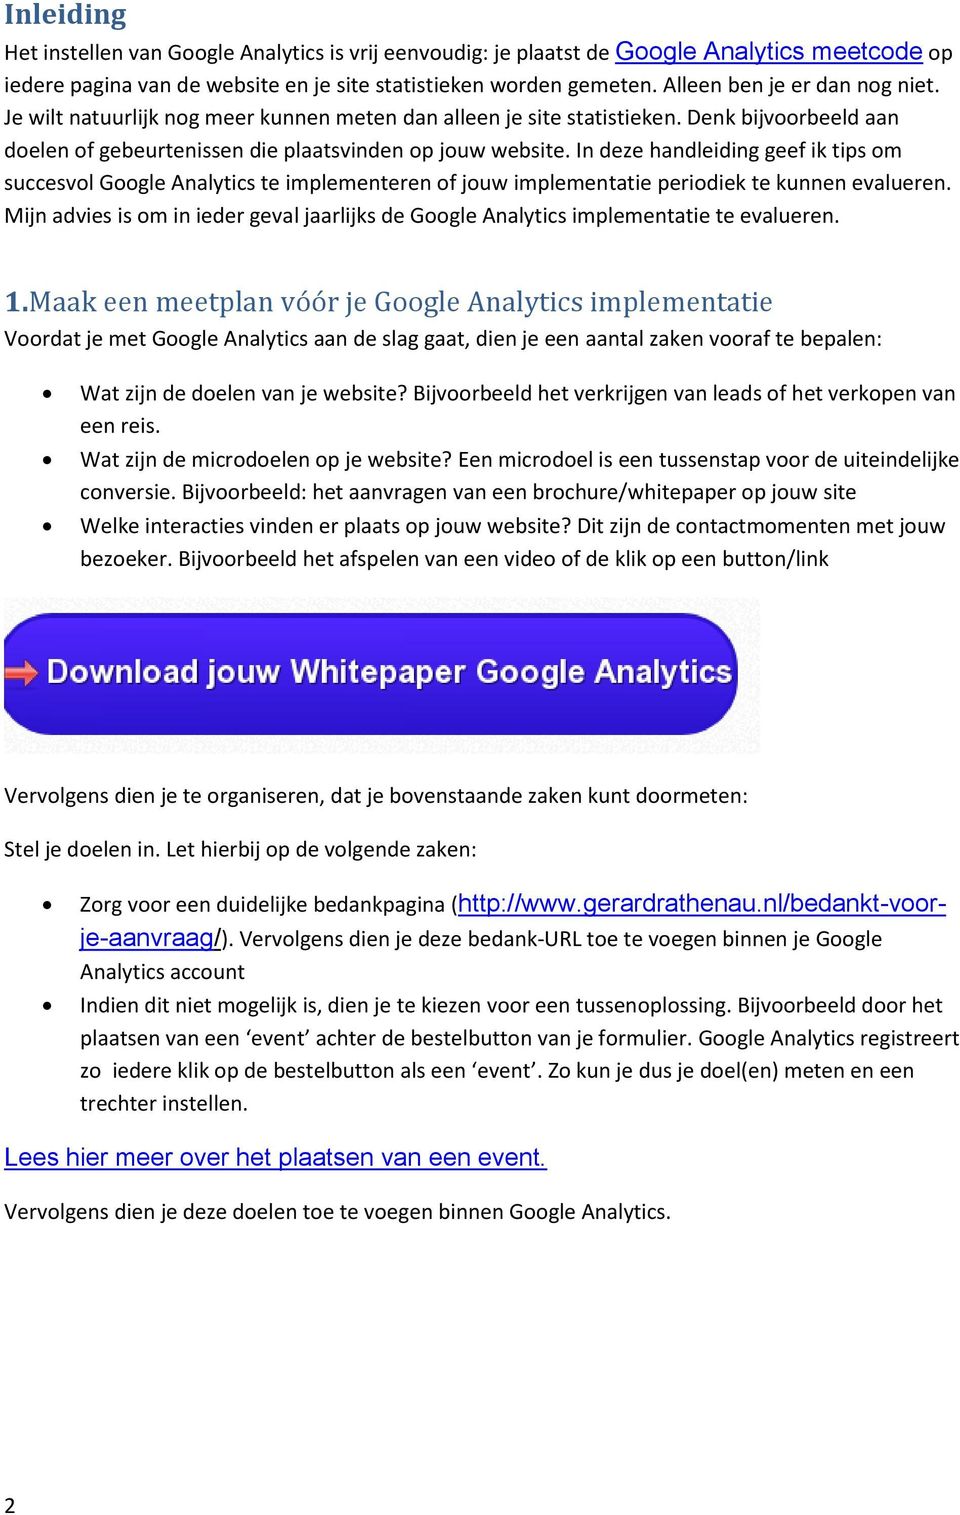 In deze handleiding geef ik tips om succesvol Google Analytics te implementeren of jouw implementatie periodiek te kunnen evalueren.